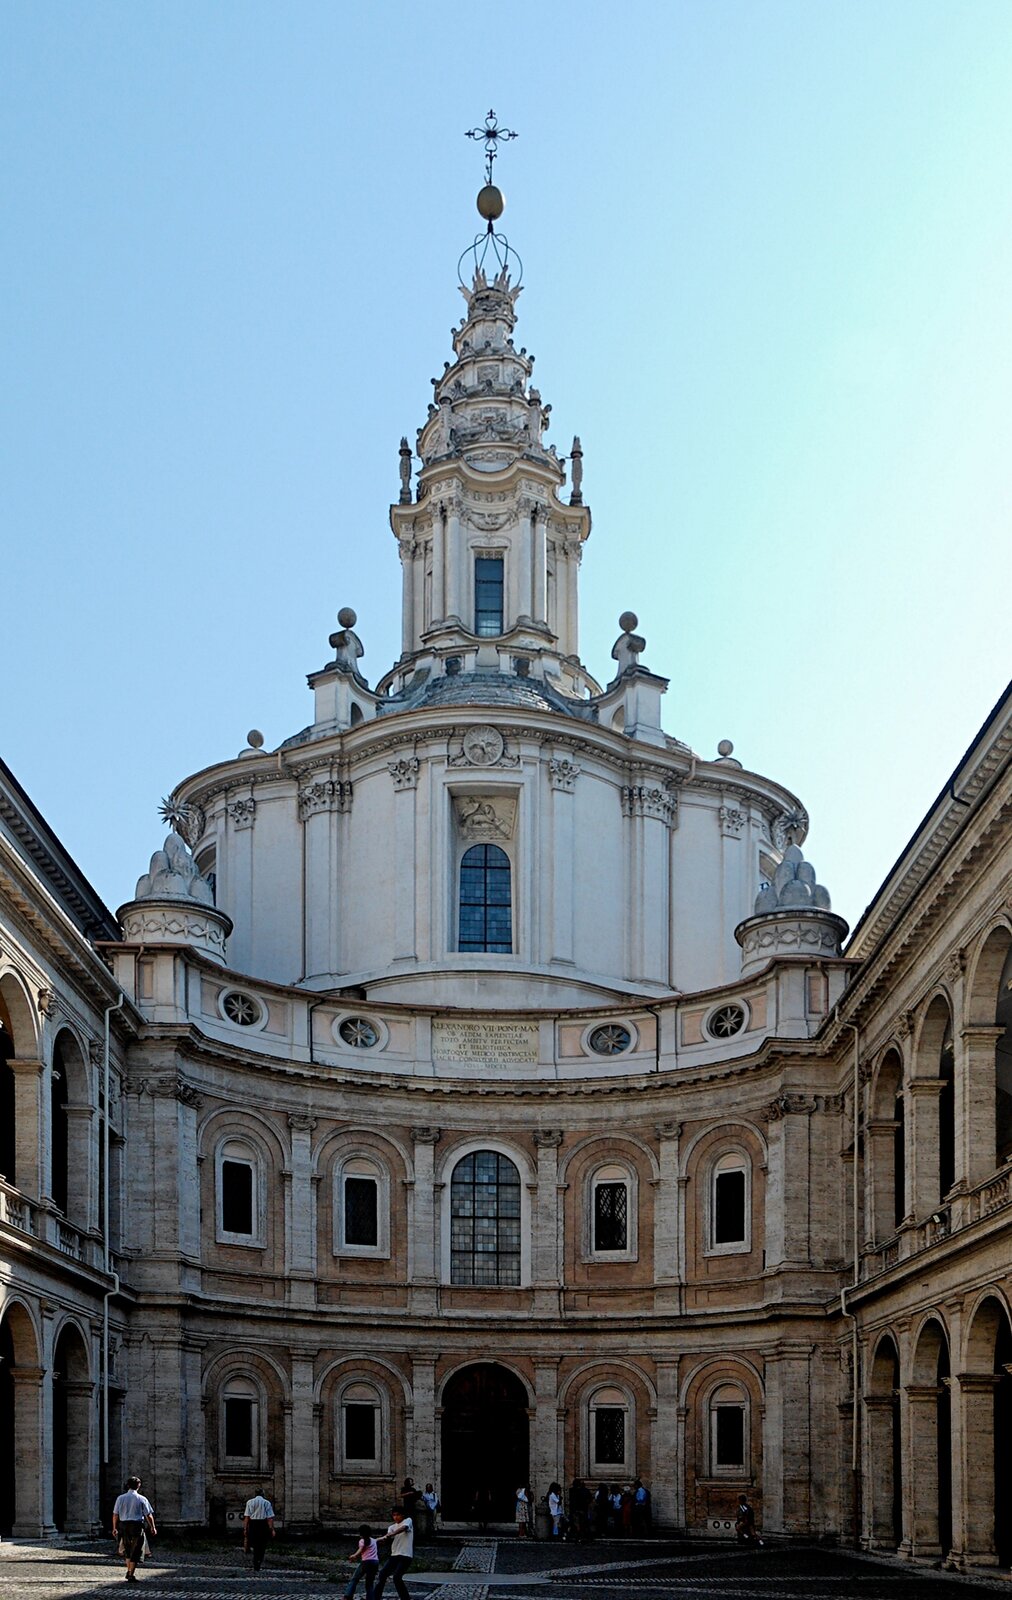 Ilustracja przedstawia kościół Sant’ Ivo della Sapienza w Rzymie Francesco Borrominiego. Ukazuje widok na fasadę zamkniętą placem, otoczonym arkadowymi loggiami. W centrum znajduje się wklęsły łuk fasady, smukła latarnia nad kopułą o bogatych zdobieniach rzeźbiarskich. Kompozycja bryły jest zwarta, symetryczna i rytmiczna. Rytm pojawia się w układzie okien. Kondygnacje dzieli gzyms.